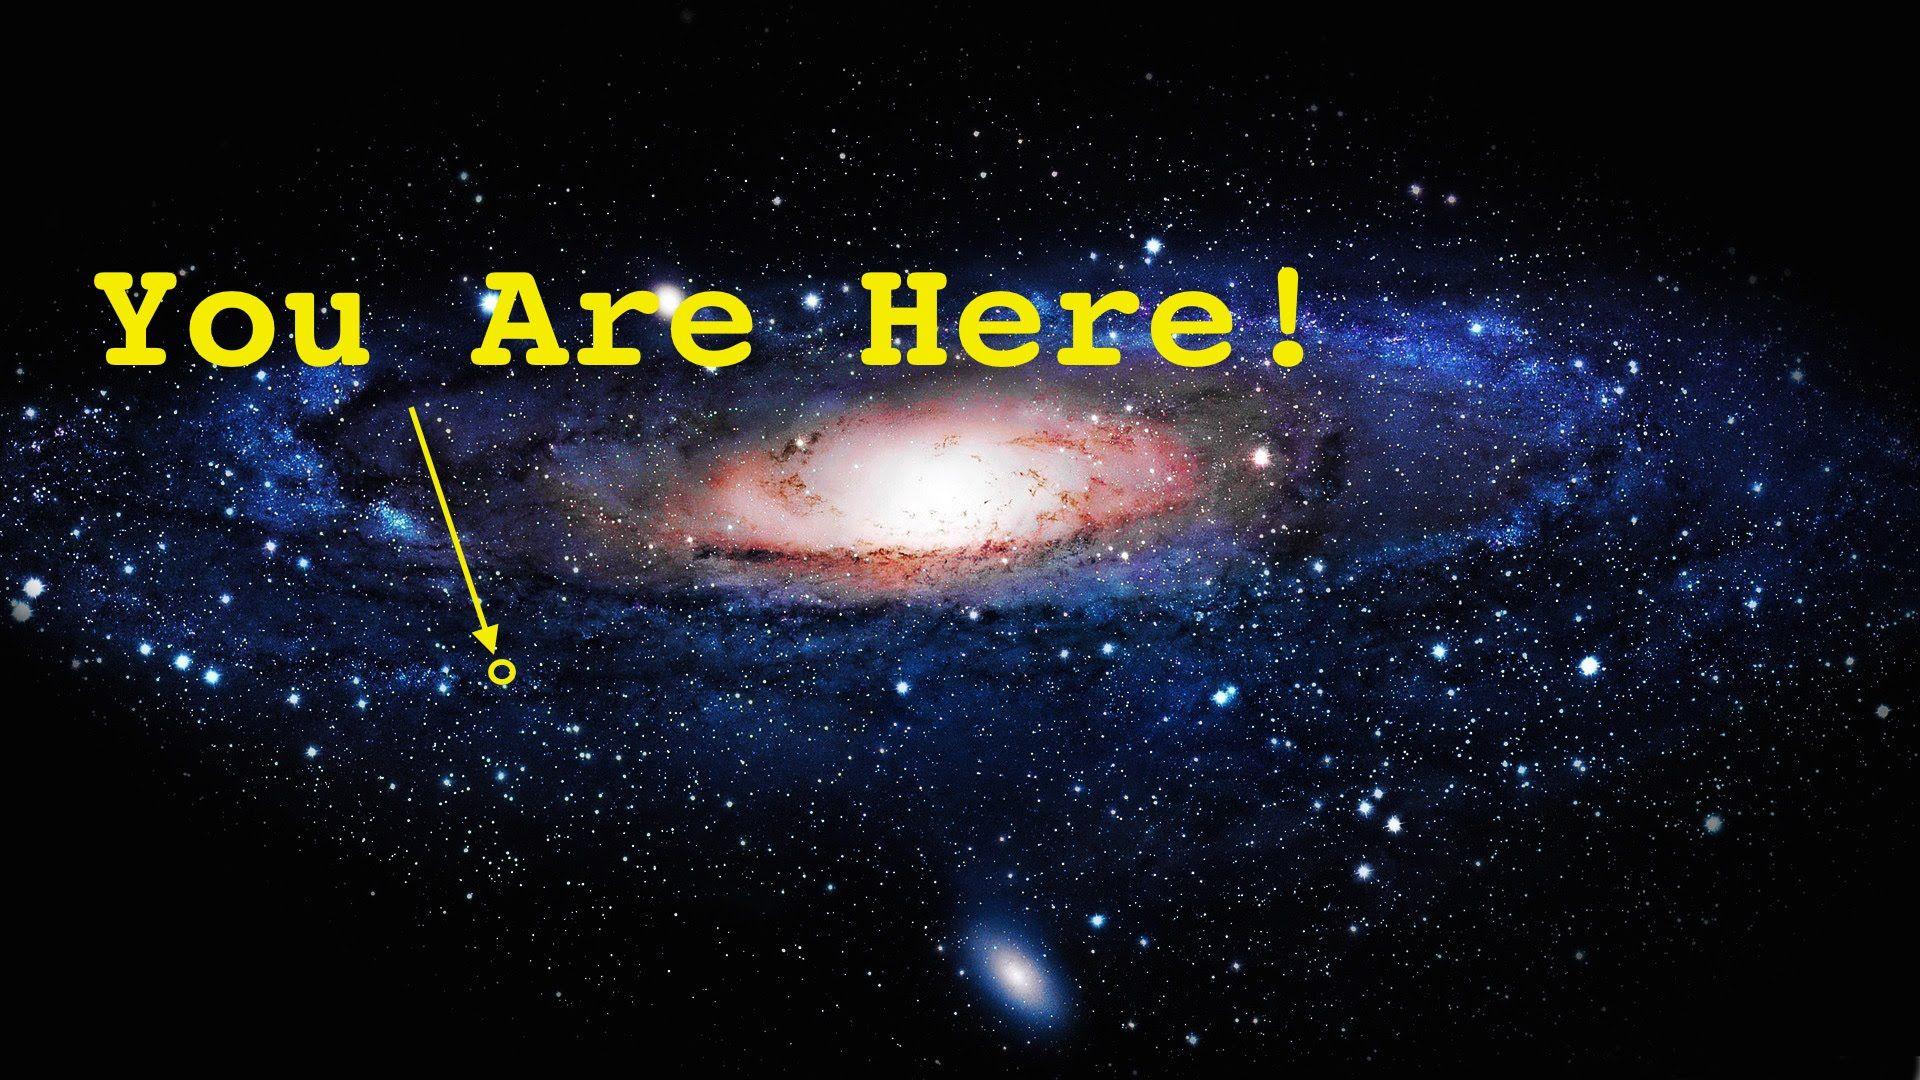 You are here world. You are here Вселенная. Млечный путь мы здесь. Размер нашей Галактики. Вселенная Галактика Млечный путь.